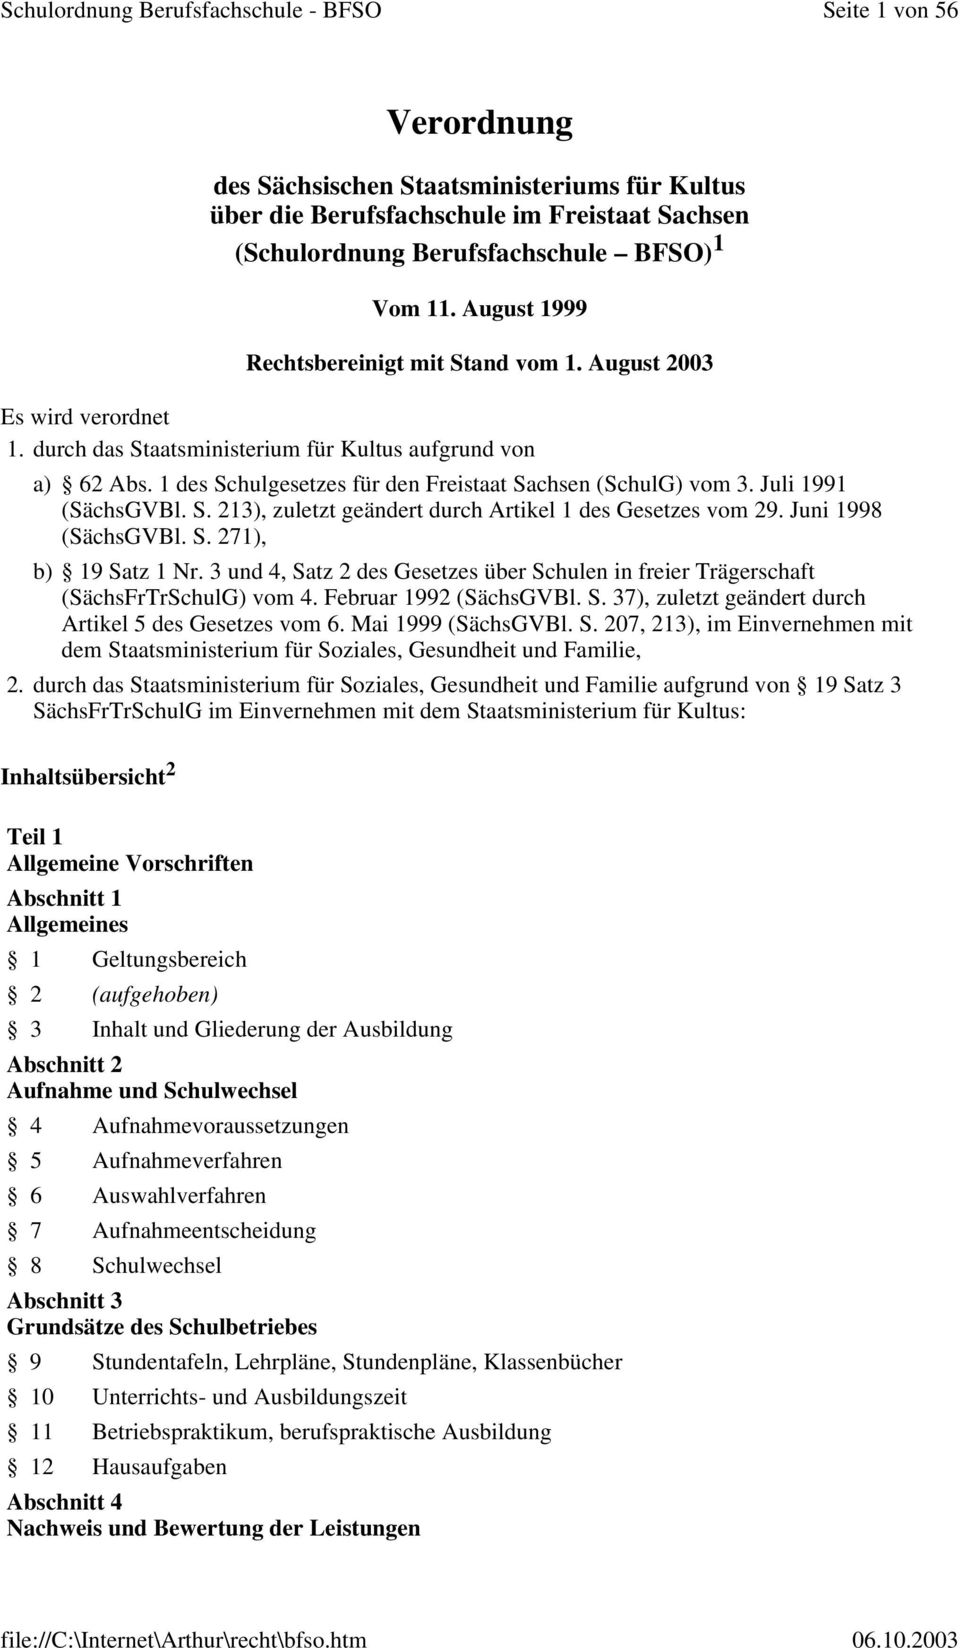 1 des Schulgesetzes für den Freistaat Sachsen (SchulG) vom 3. Juli 1991 (SächsGVBl. S. 213), zuletzt geändert durch Artikel 1 des Gesetzes vom 29. Juni 1998 (SächsGVBl. S. 271), b) 19 Satz 1 Nr.